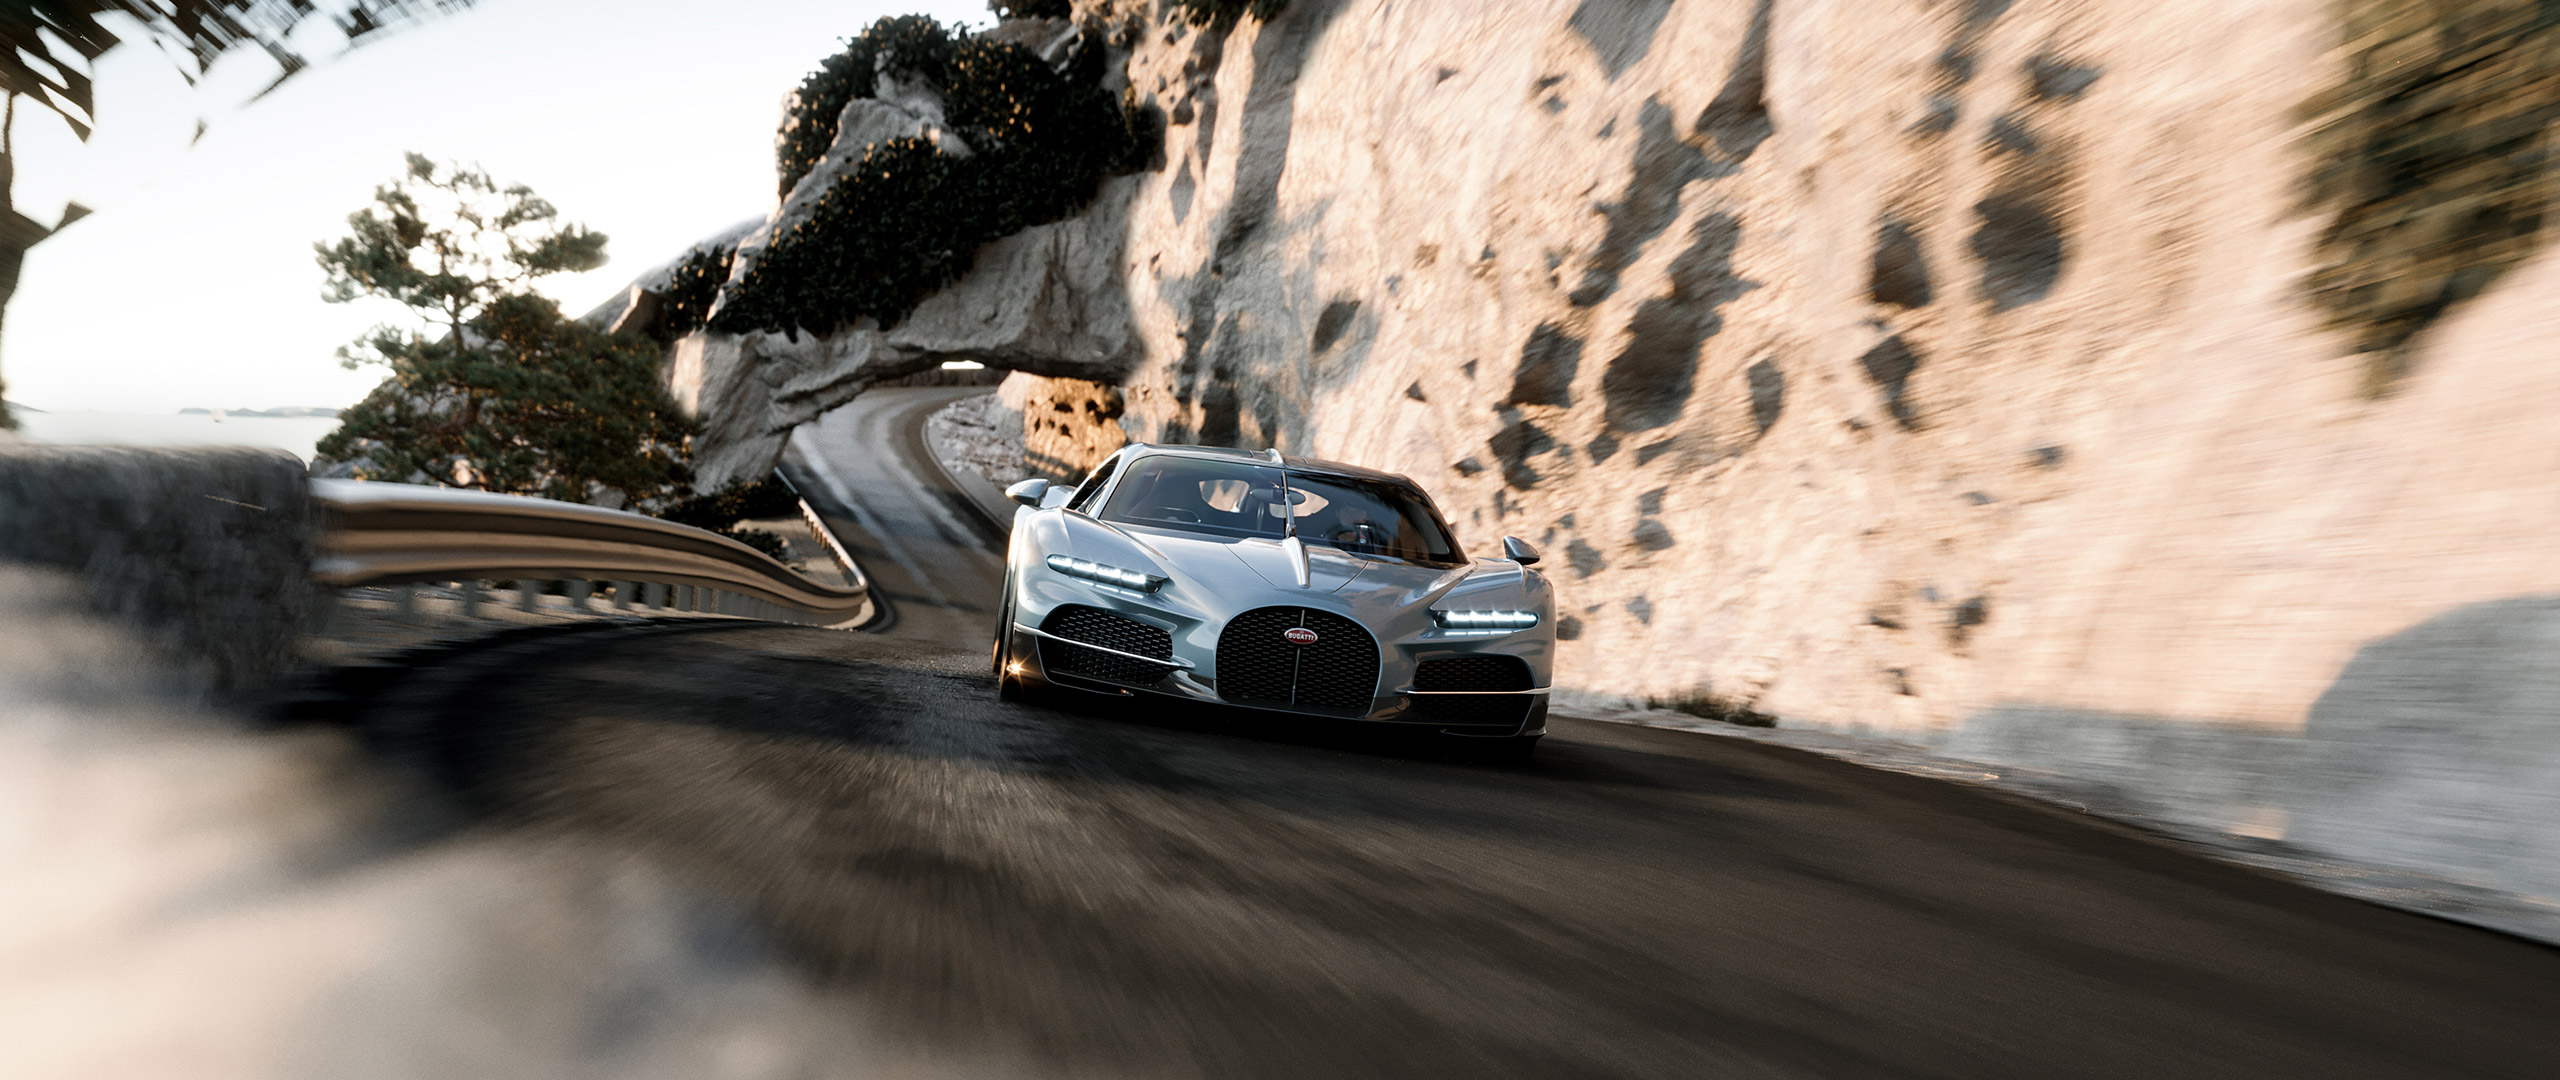  2026 Bugatti Tourbillon Wallpaper.